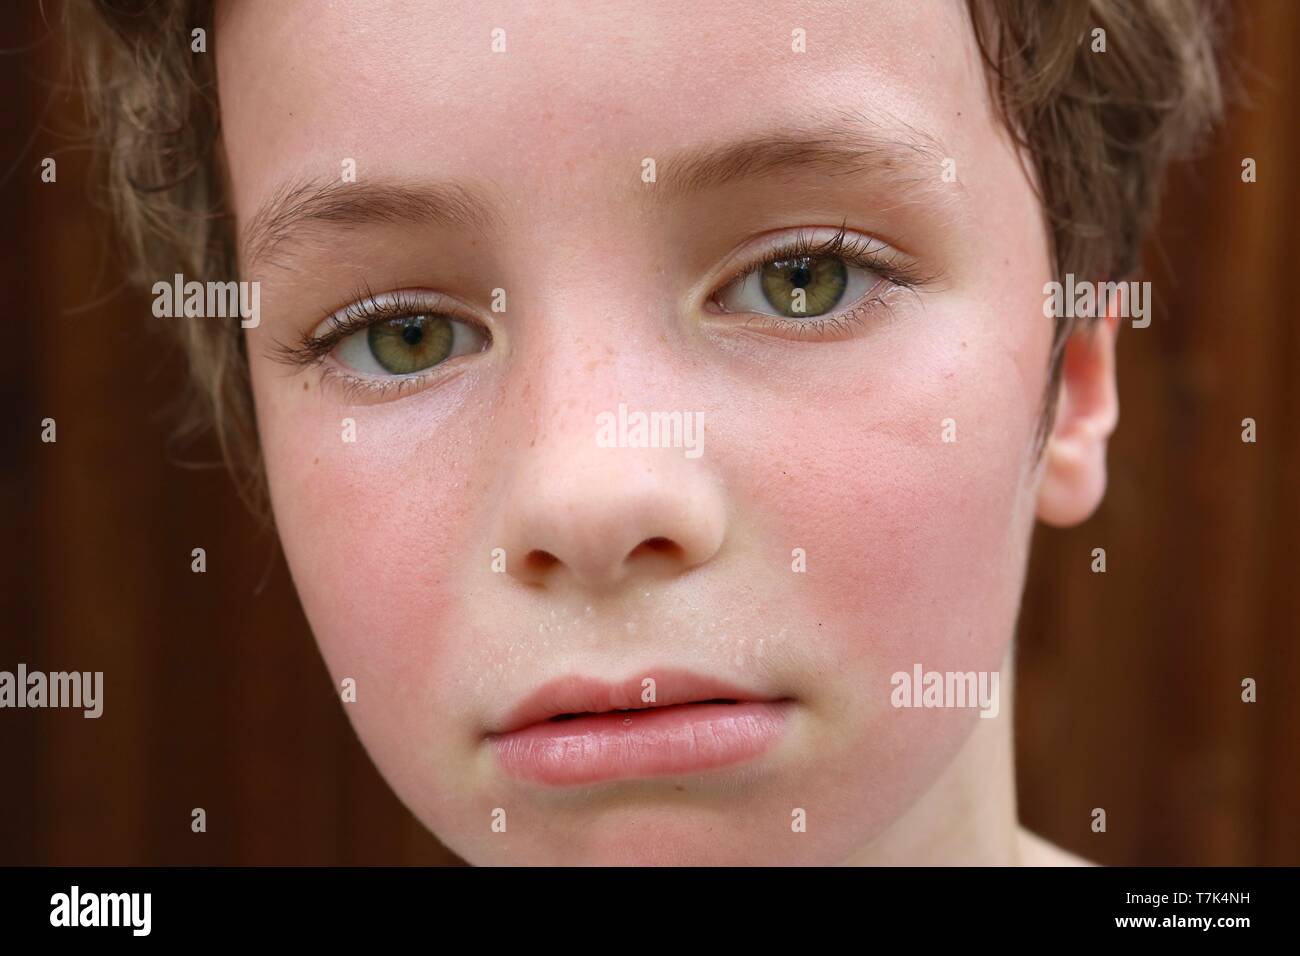 Makroaufnahme der heisses Gesicht eines Kindes mit geröteten Wangen und Schweiß Perlen über der Lippe Stockfoto